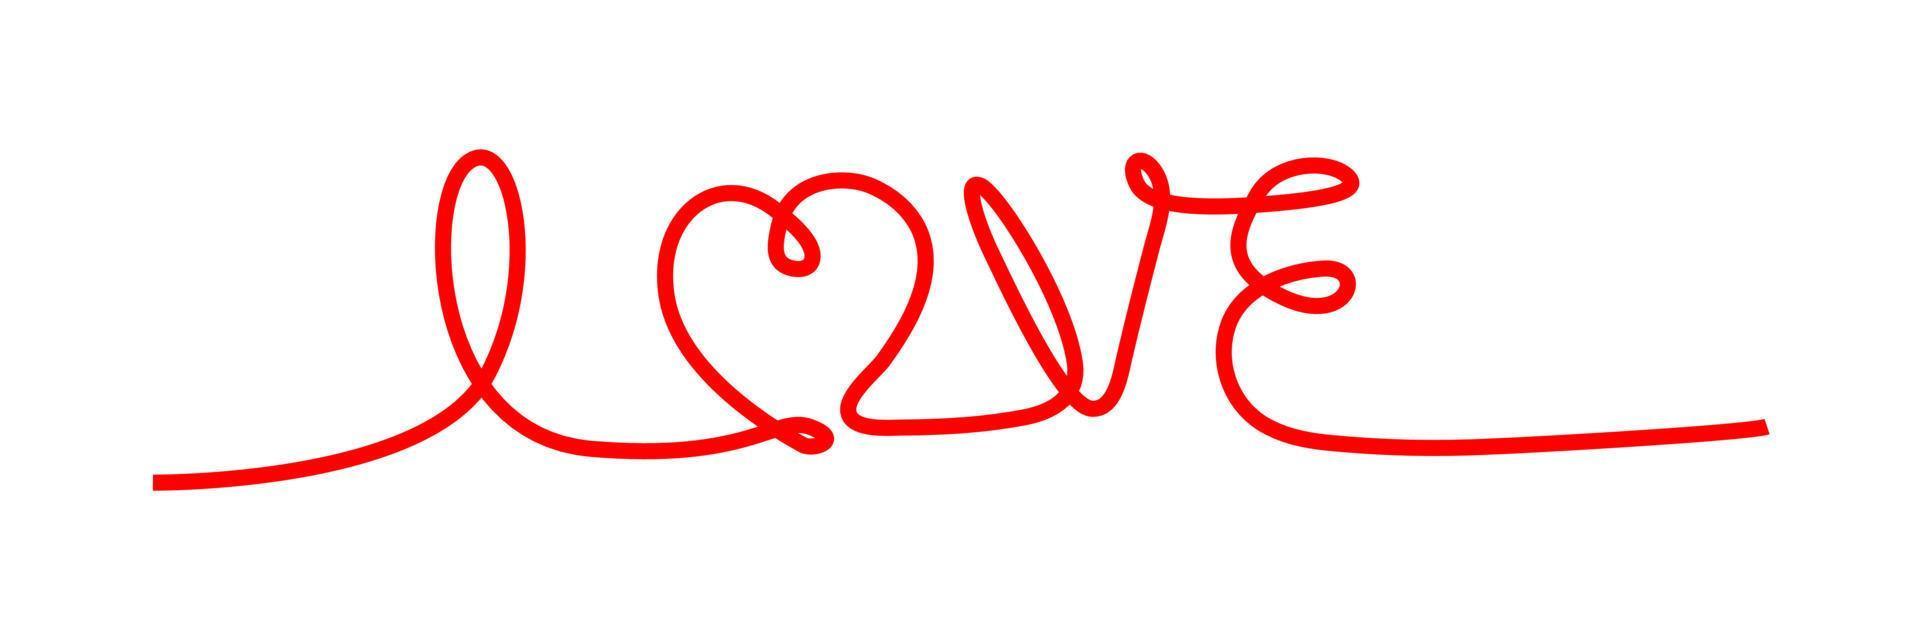 kärlek. kontinuerlig linje skript kursiv text kärlek. bokstäver vektorillustration för affisch, kort, banner alla hjärtans dag, bröllop. handritad ord - kärlek med doodle hjärta. tryck för t-shirt, t-shirt. vektor